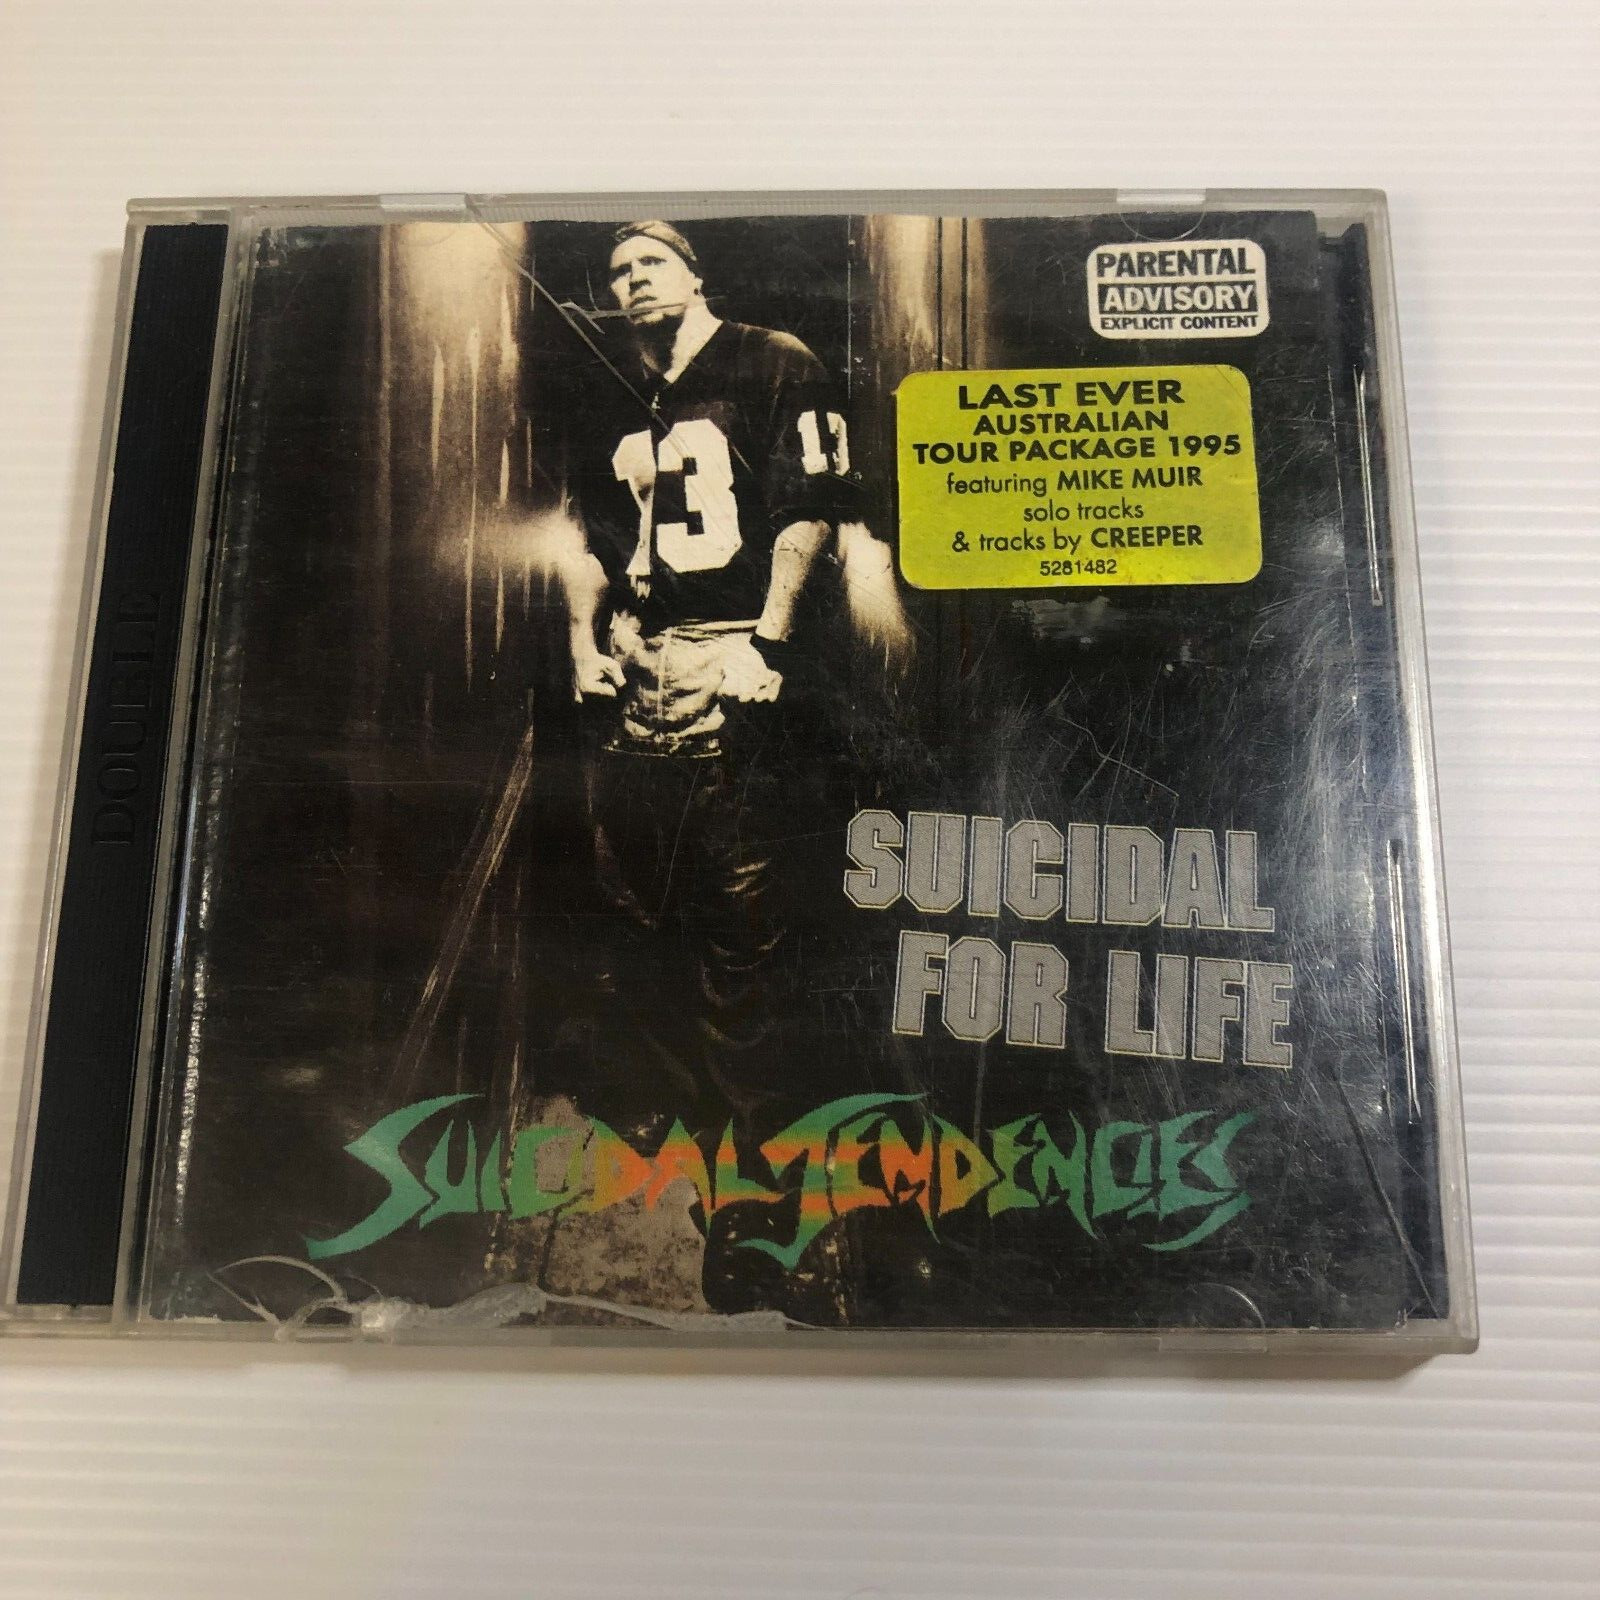 SUICIDAL TENDENCIES - SUICIDAL FOR LIFE - 1995